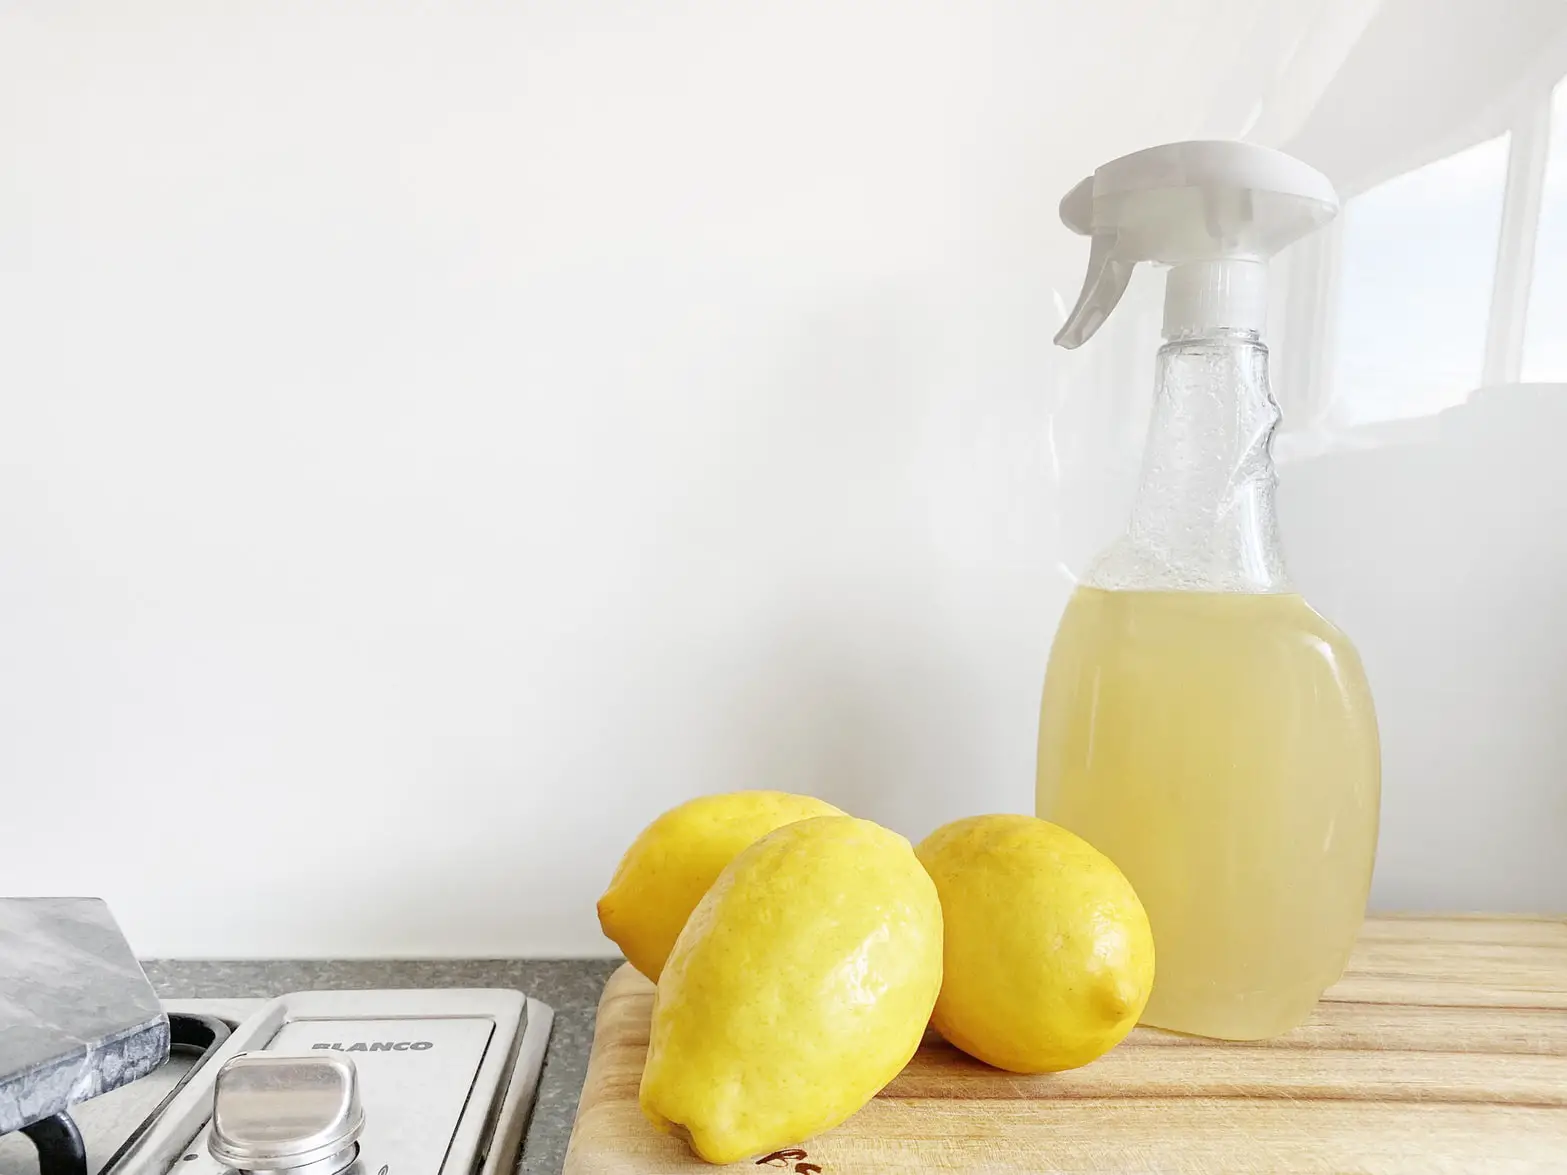 lemons and bottle sprayer for cleaning